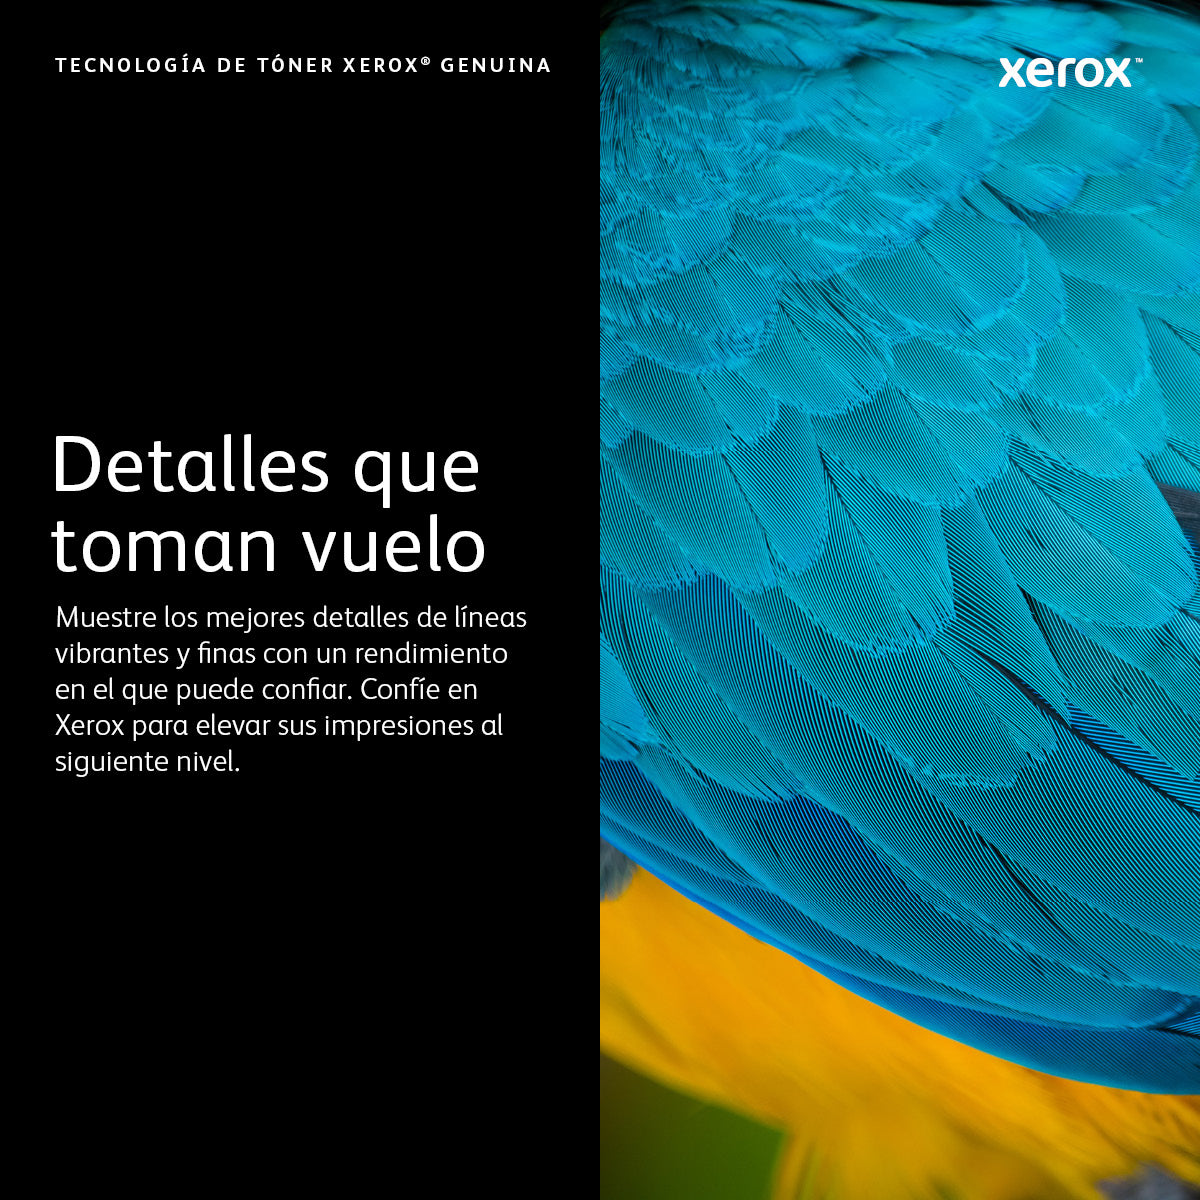 XEROX SUPP A4 MON TONER MAGENTA ALTA CAPACIDAD VETONR RSALINK C7000 10.100 IMPRESIONES